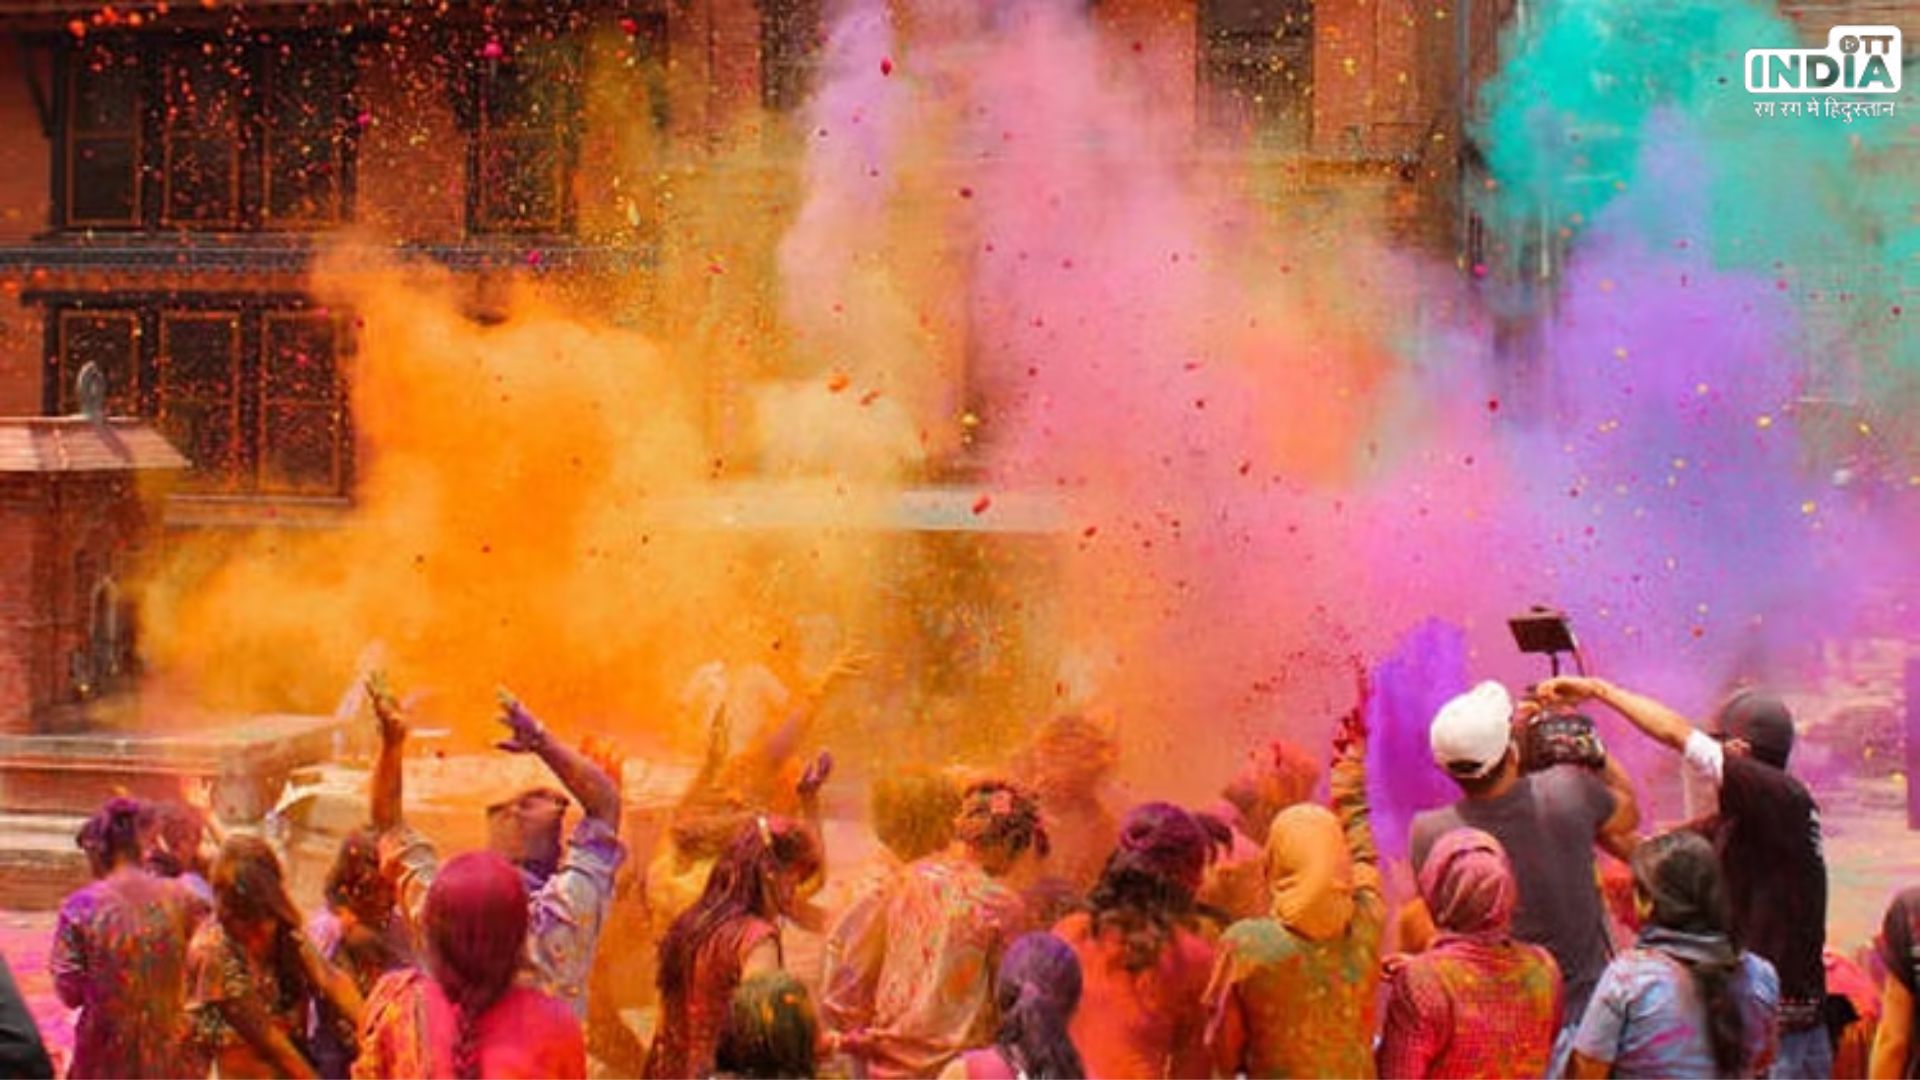 Holi Celebration in India: भारत के इन राज्यों में अनोखे अंदाज में मनाया जाता है होली का त्यौहार